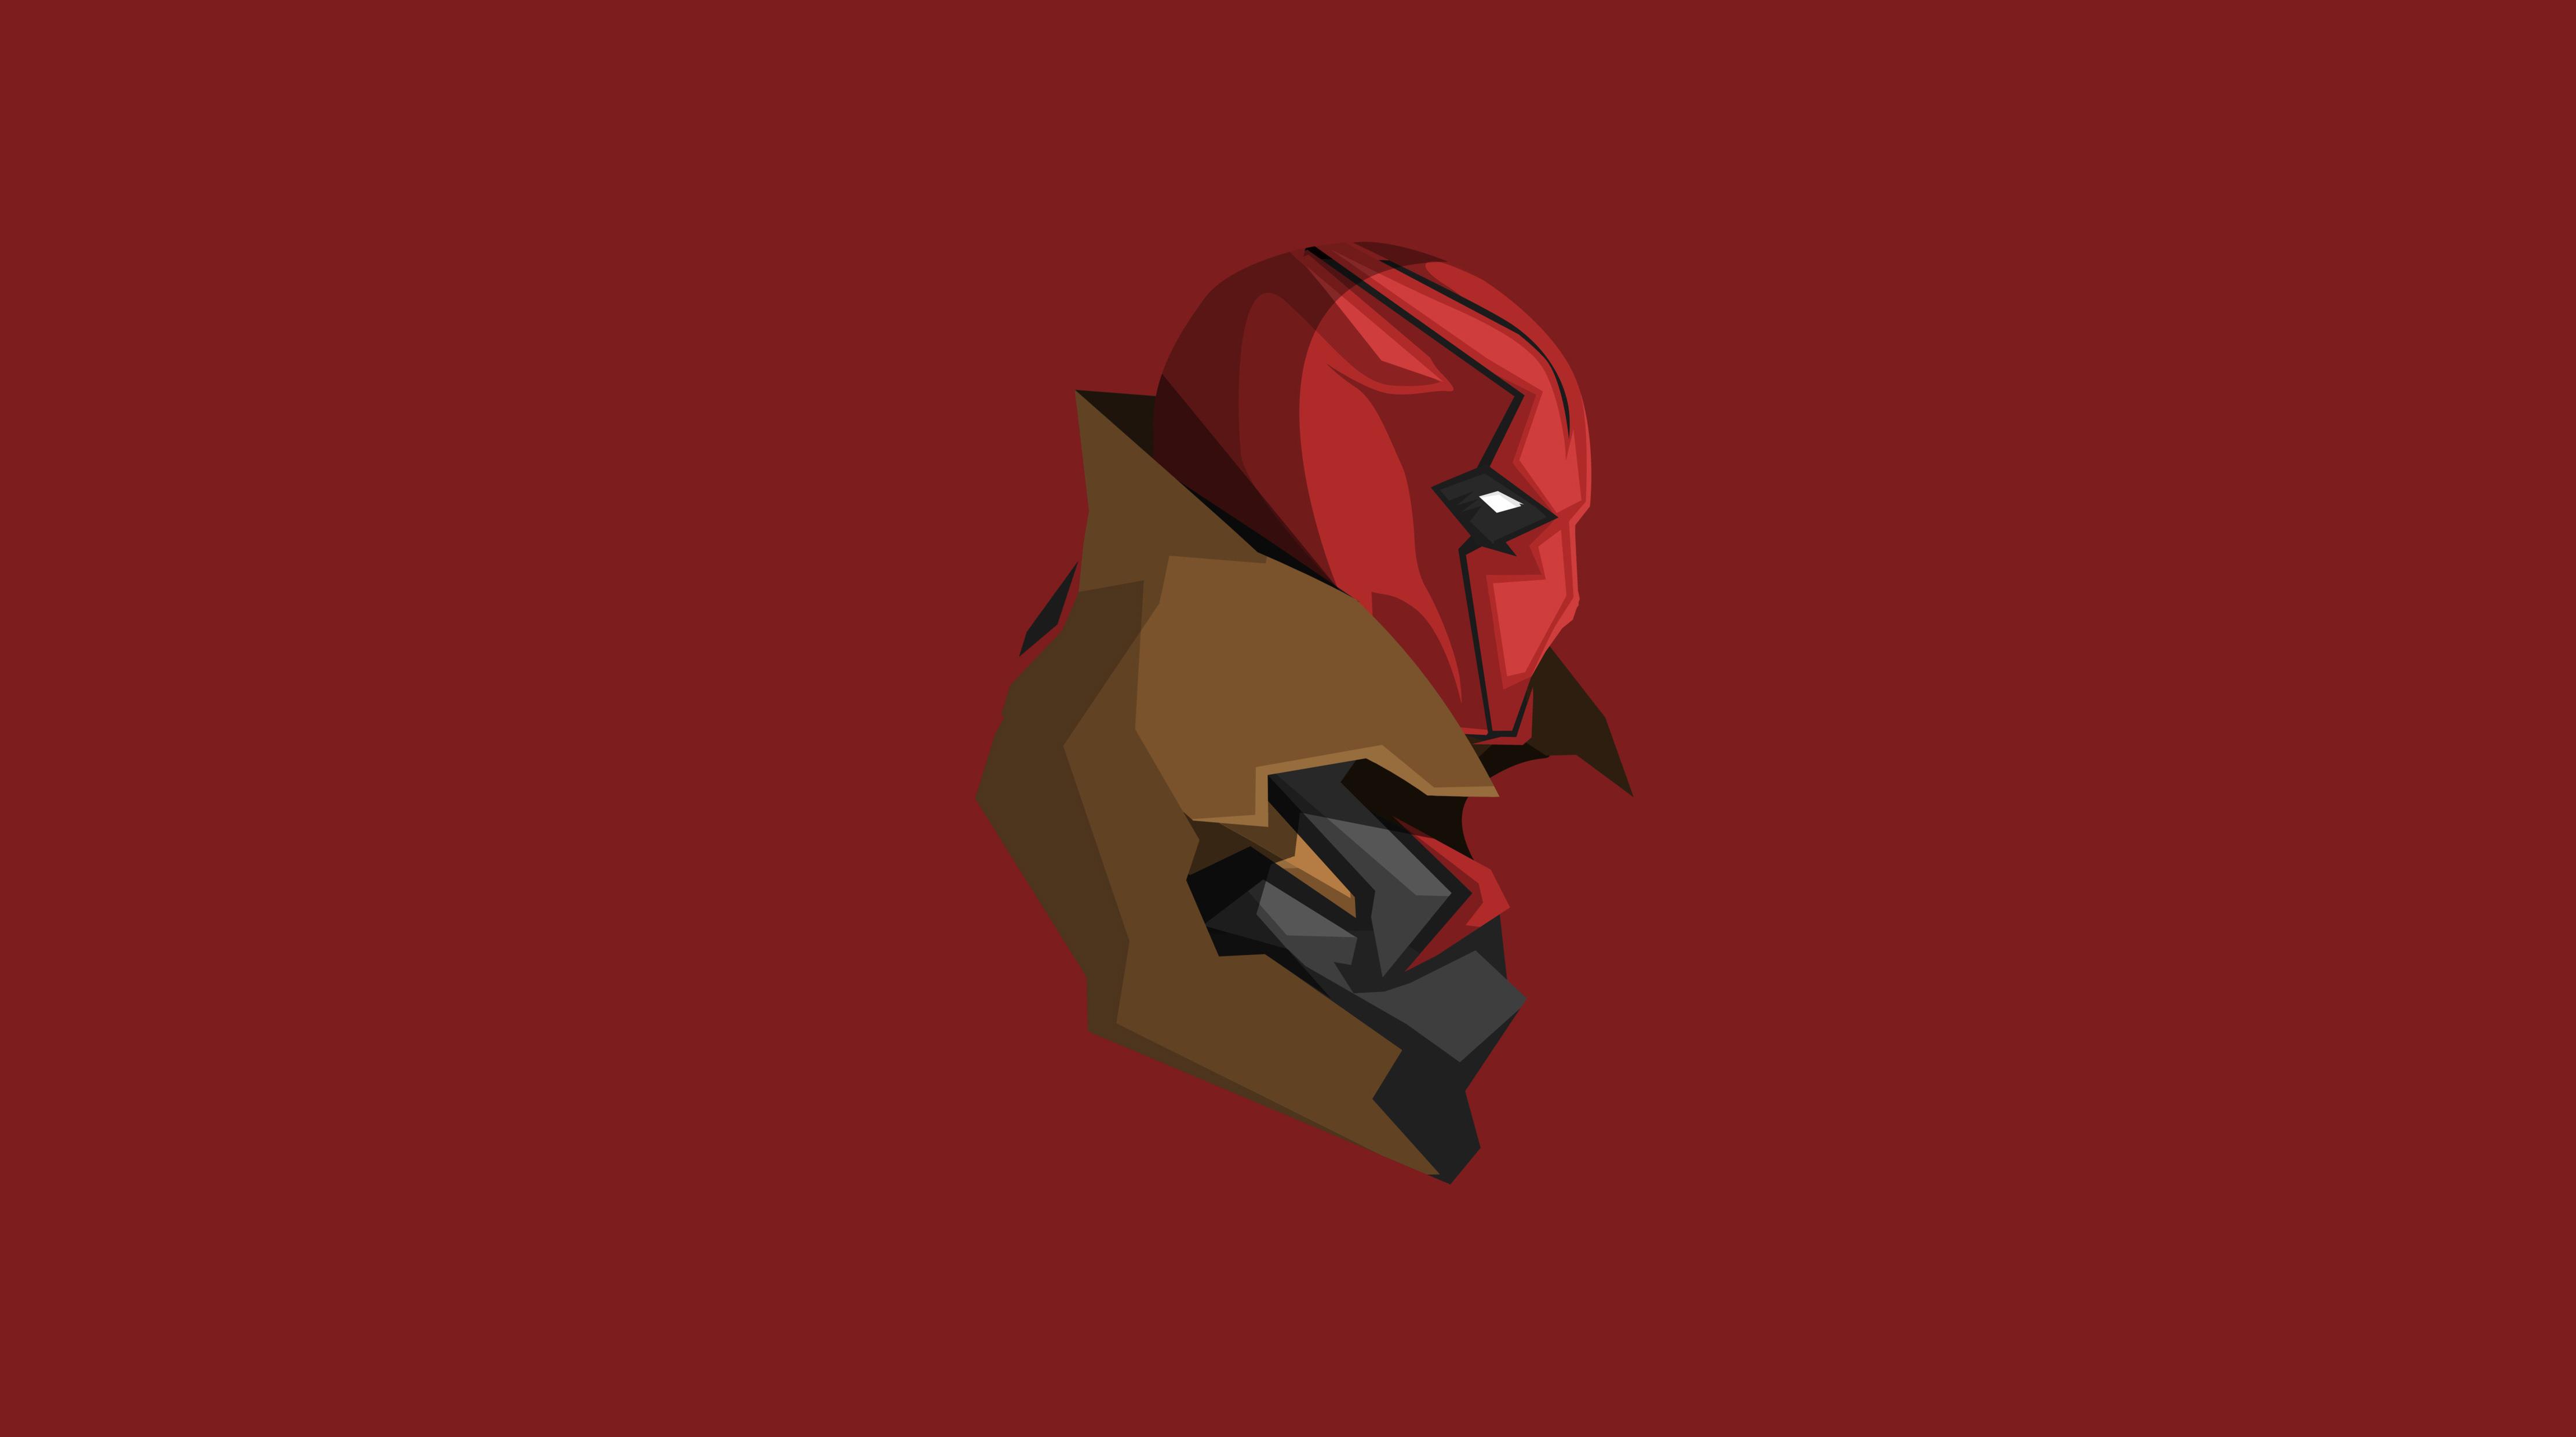 Red Hood Minimalism 4k, HD Superheroes, 4k Wallpaper, Image